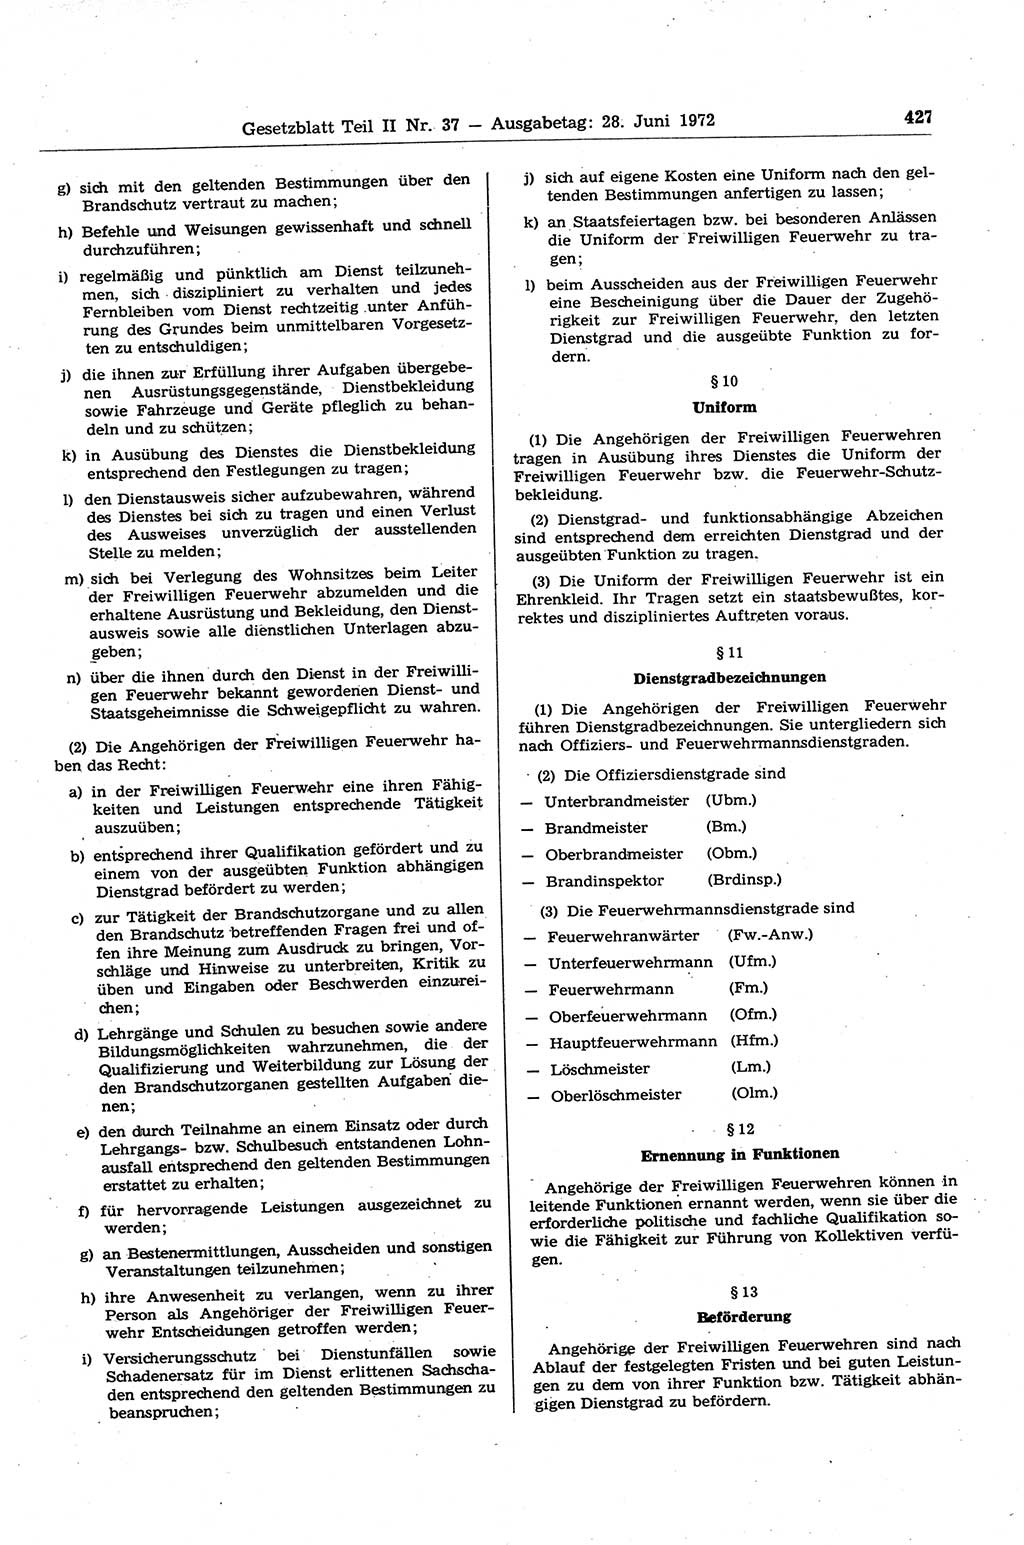 Gesetzblatt (GBl.) der Deutschen Demokratischen Republik (DDR) Teil ⅠⅠ 1972, Seite 427 (GBl. DDR ⅠⅠ 1972, S. 427)